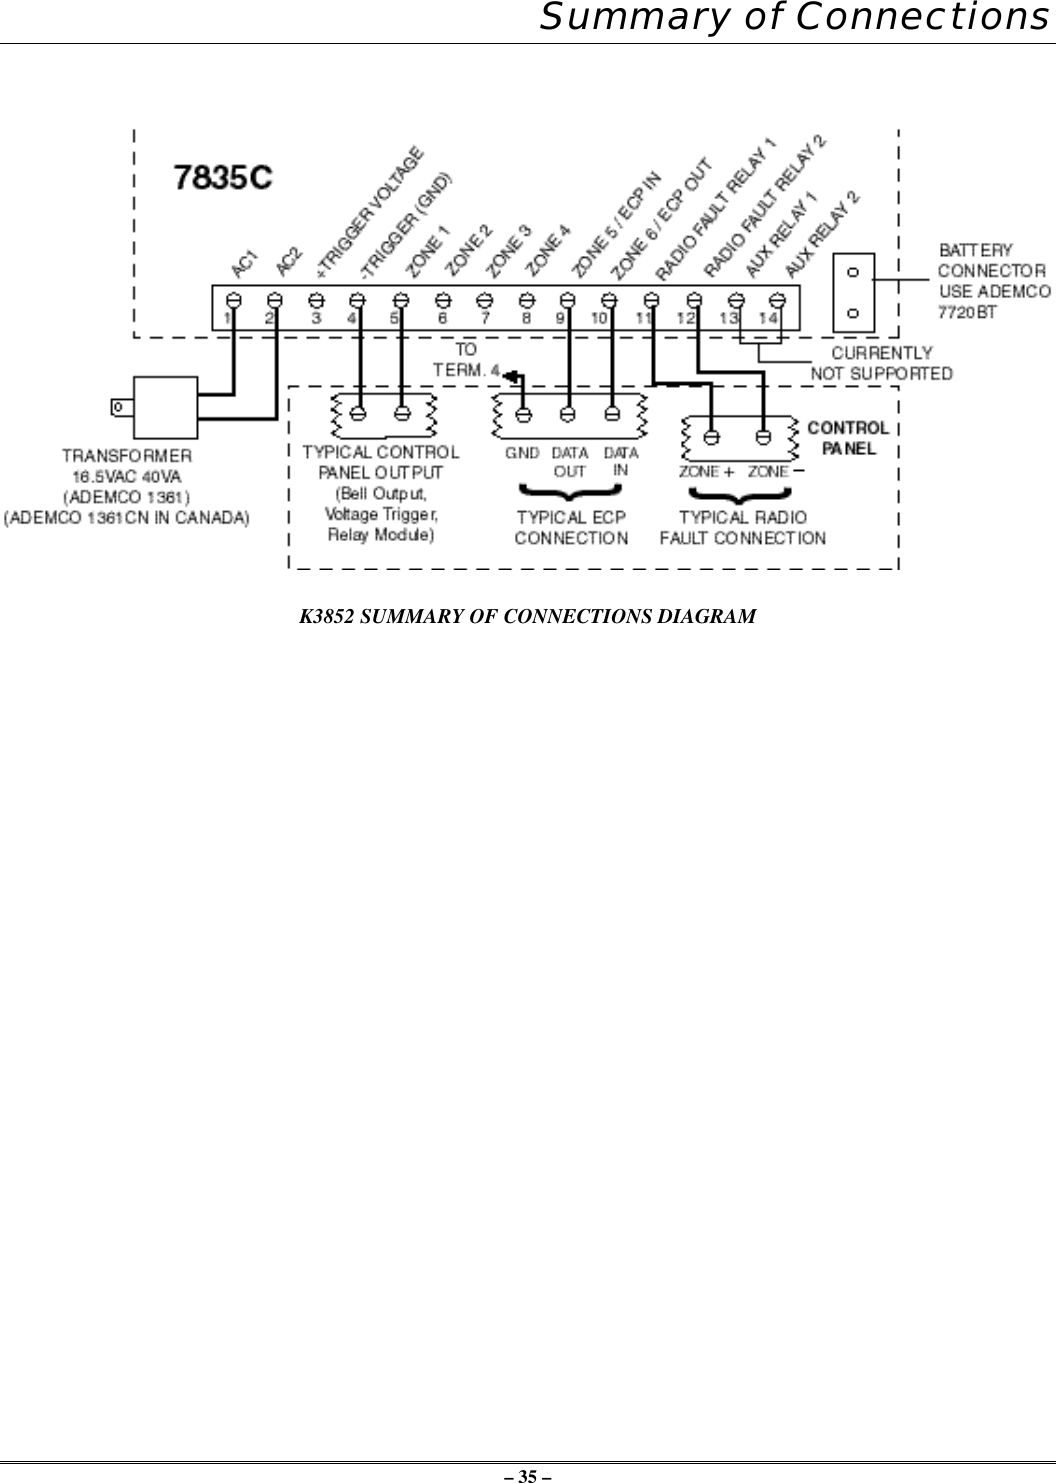 – 35 –Summary of ConnectionsK3852 SUMMARY OF CONNECTIONS DIAGRAM